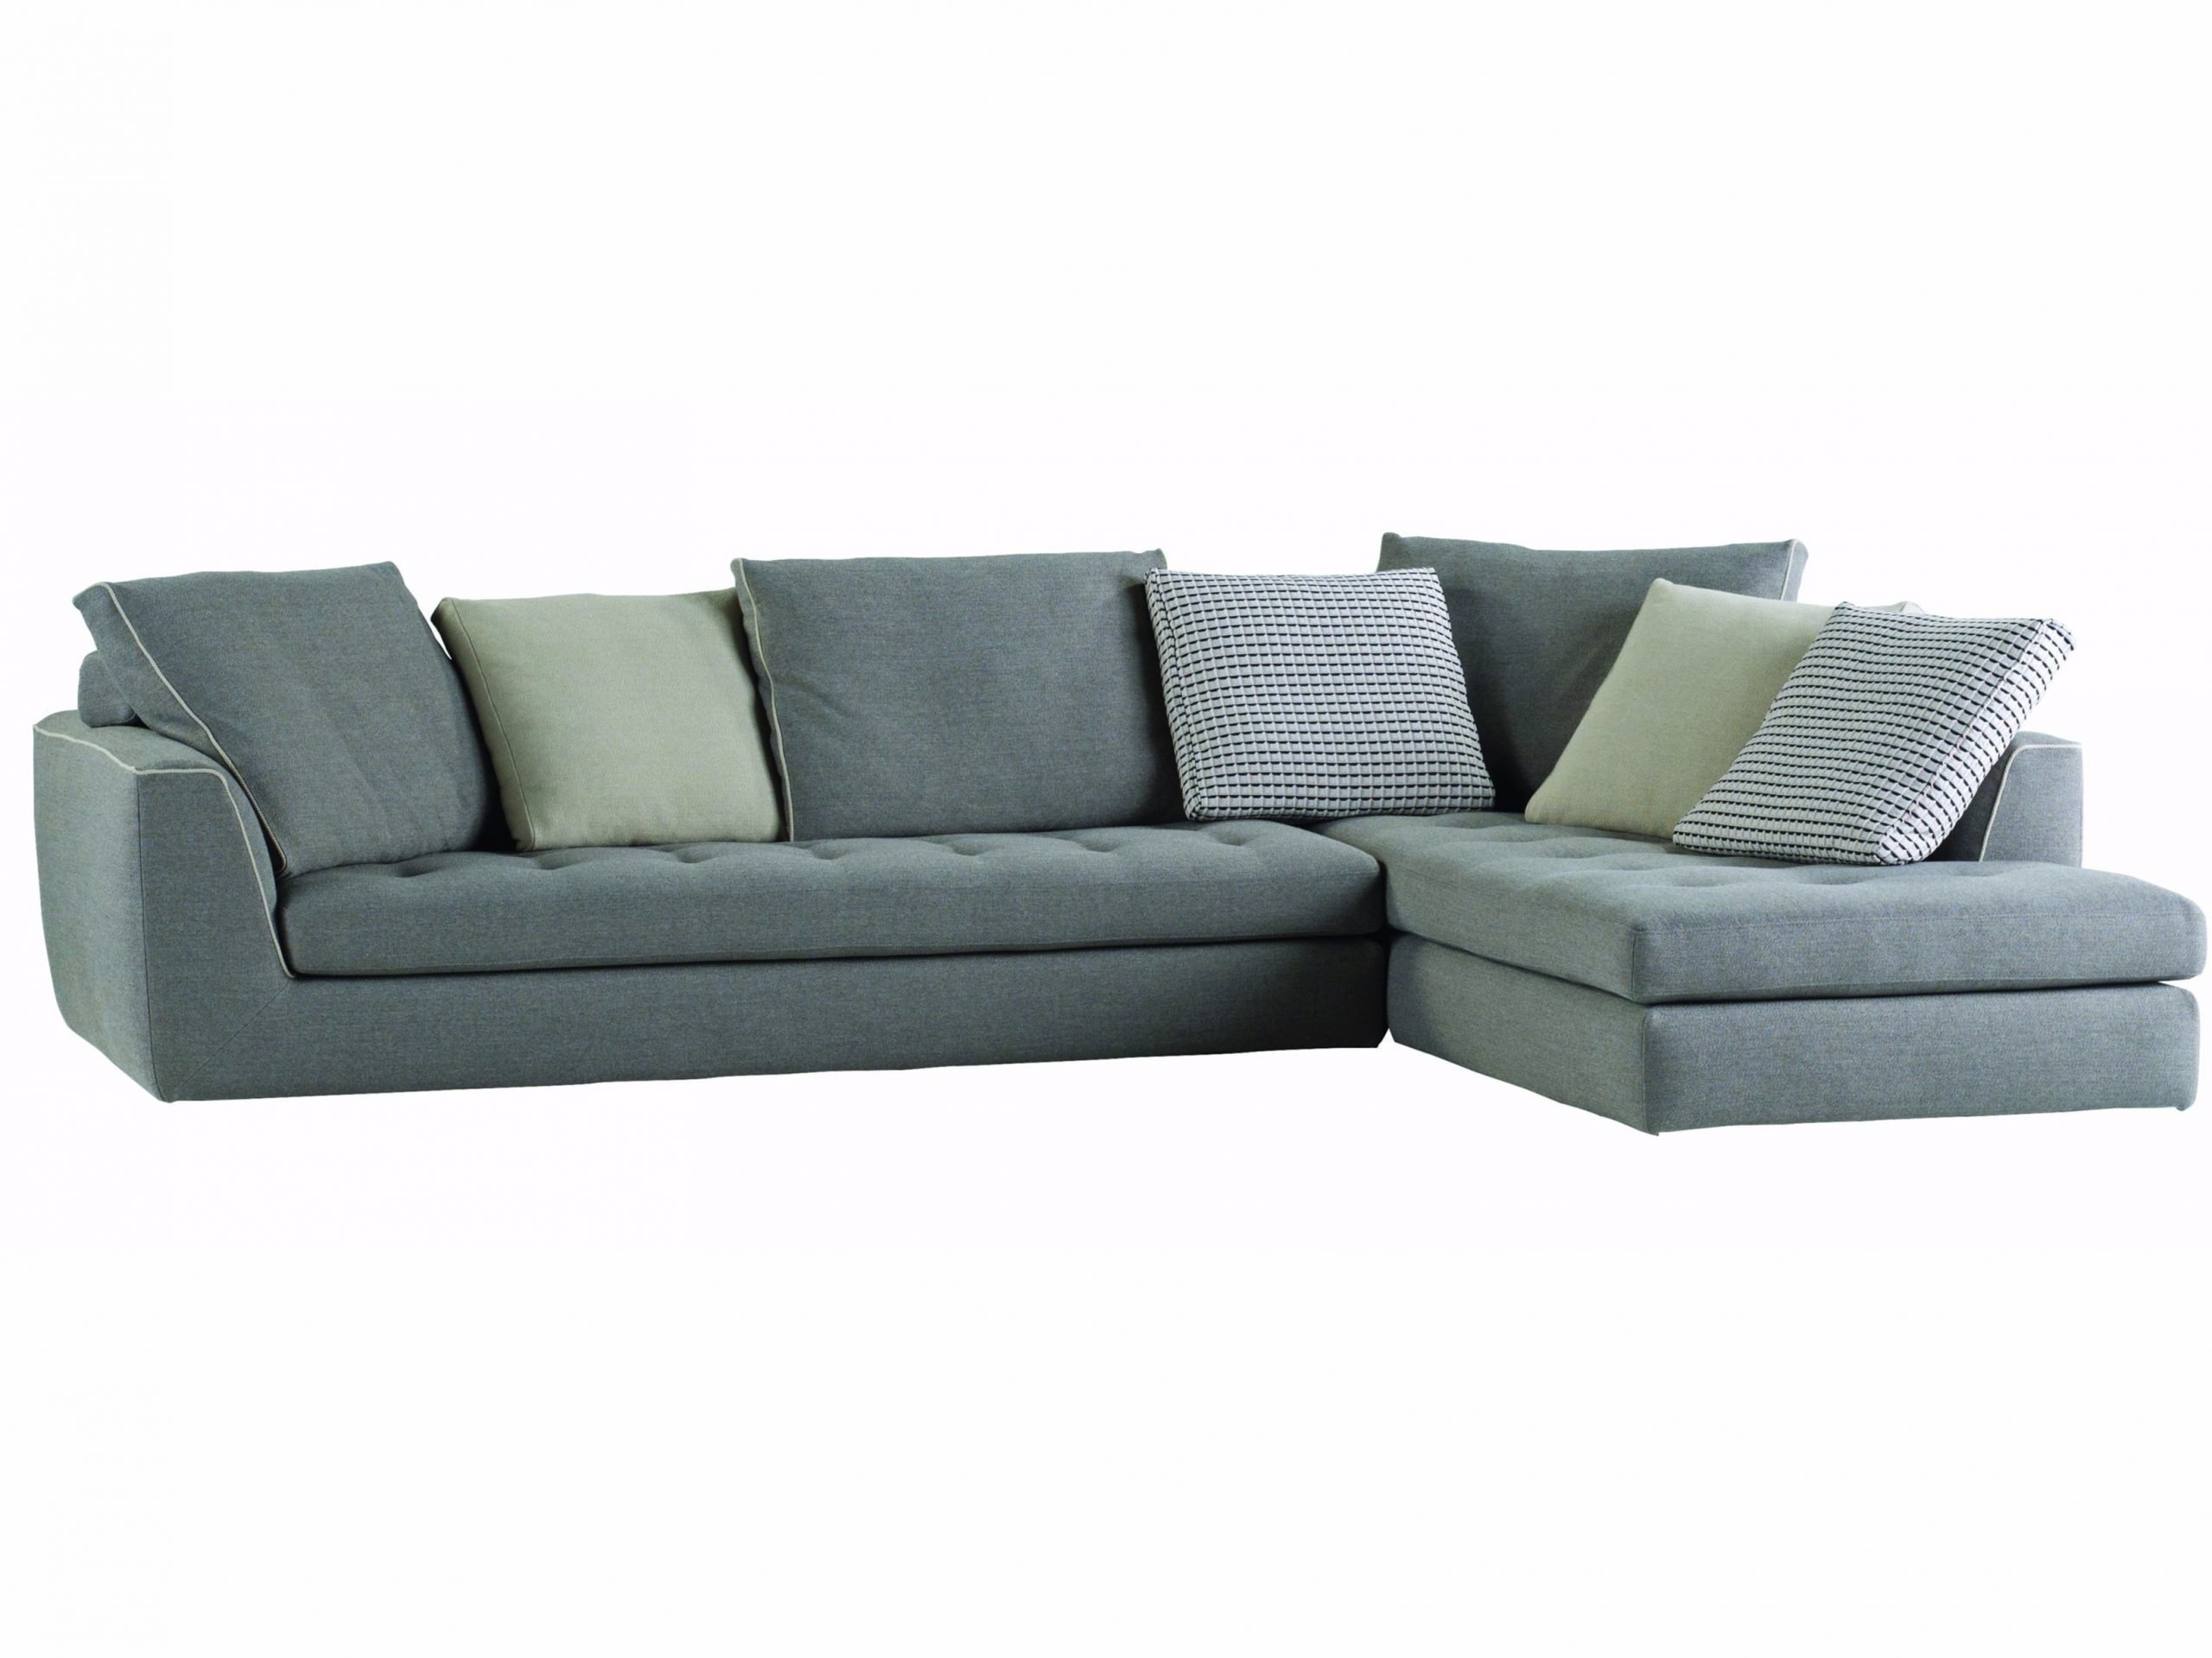 roche bobois sofa bed price